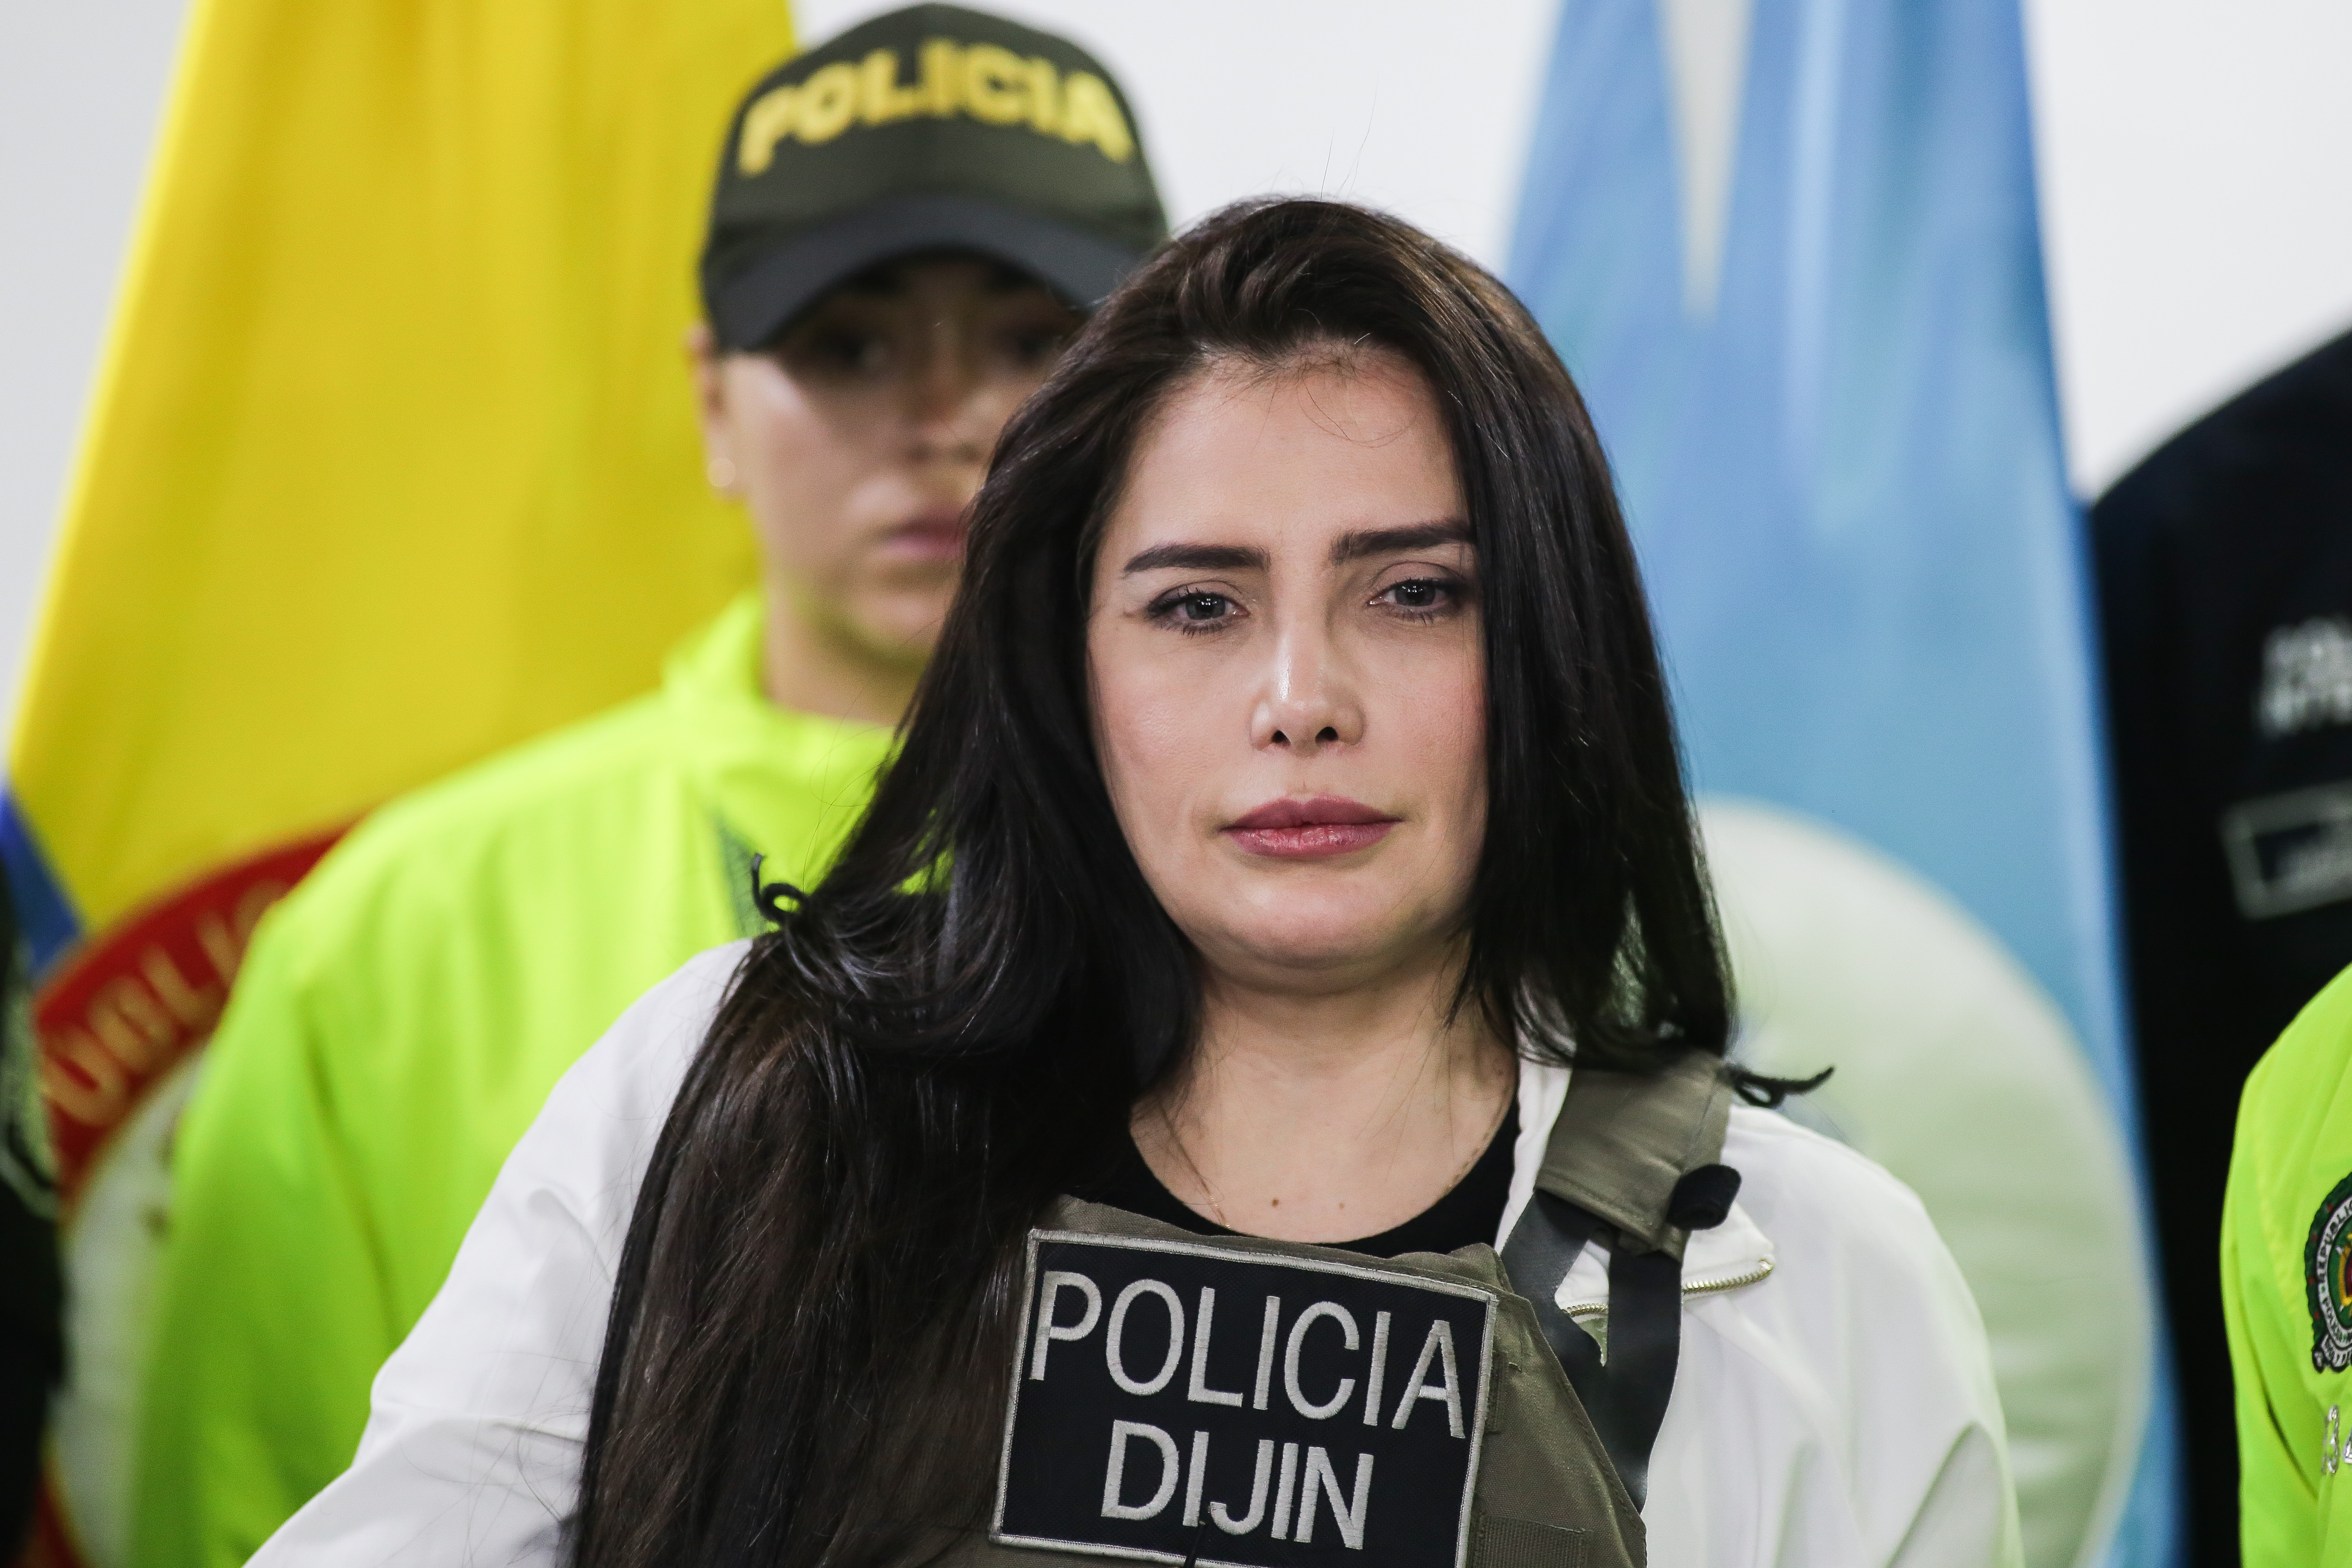 Aida Merlano solicitará oficialmente que le dejen ingresar aparatos electrónicos a la cárcel, tras enfrentamientos con las guardianas